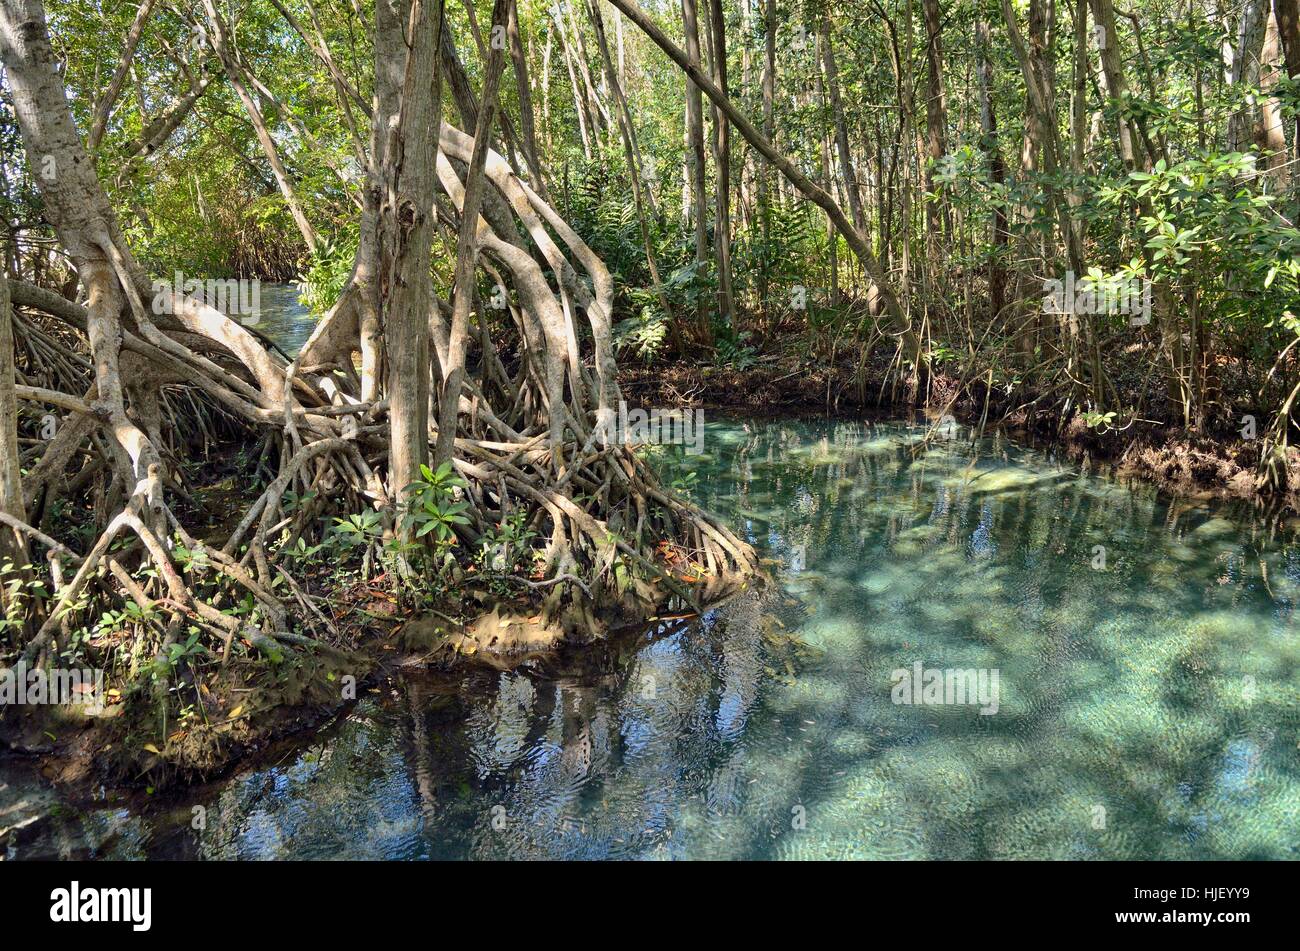 Süßwasser-Quelle in Mangrovenwald (Rhizophora), in der Nähe von Celestun, Yucatan, Mexiko Stockfoto